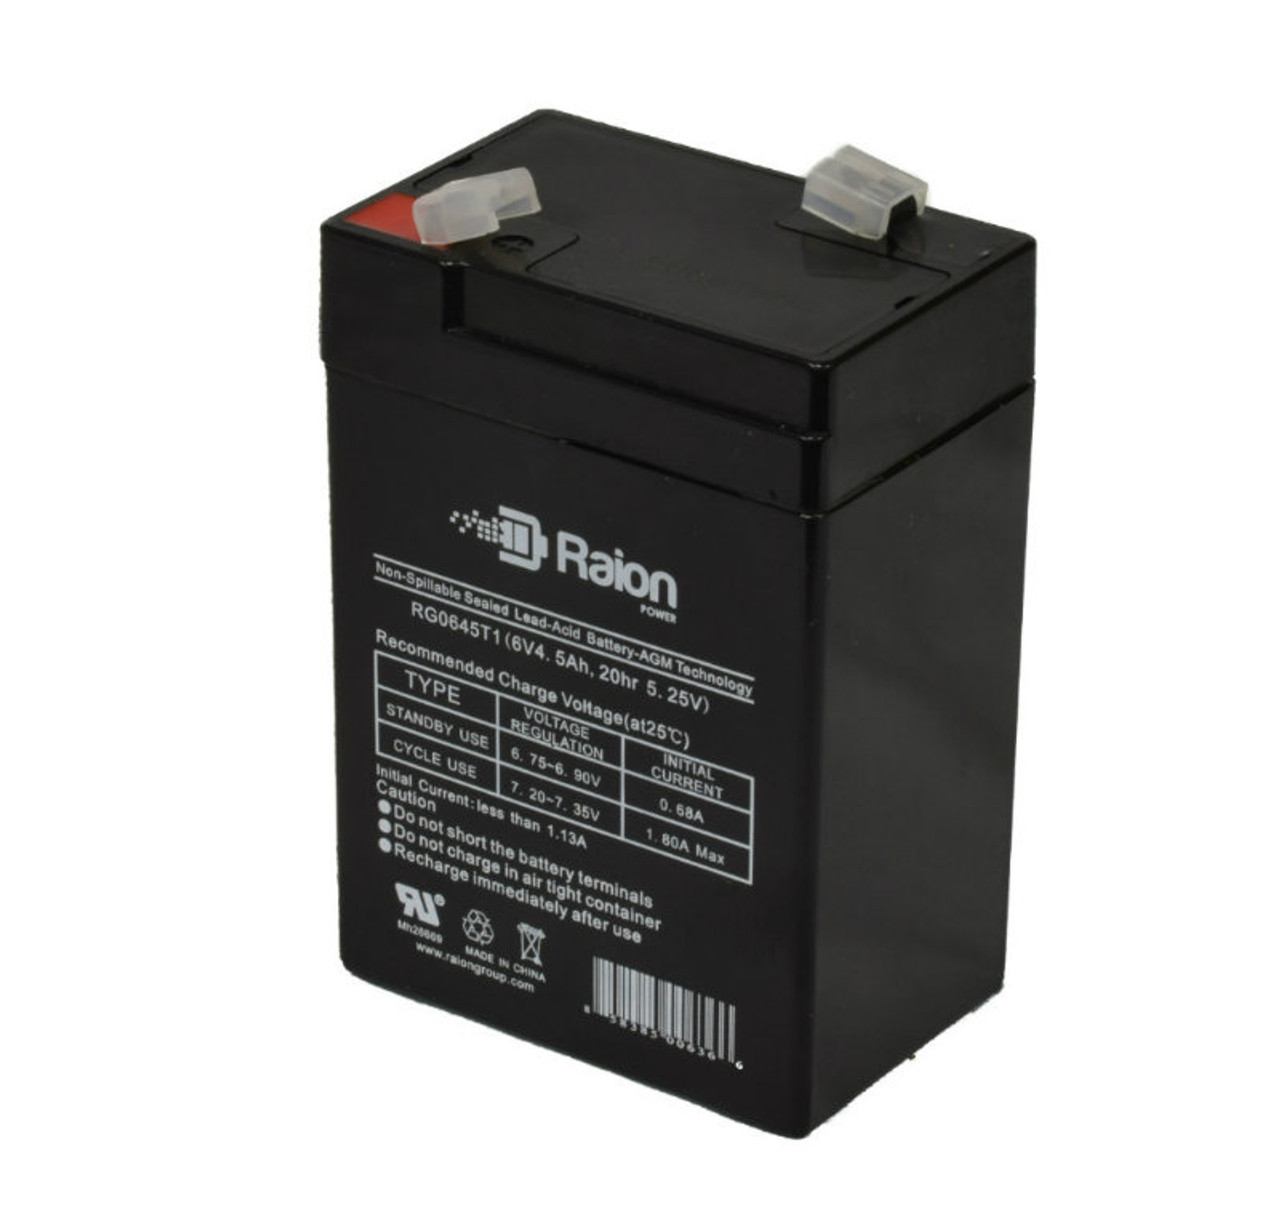 Raion Power RG0645T1 6V 4.5Ah Replacement Battery Cartridge for Nellcor Puritan-Bennett Oximeter